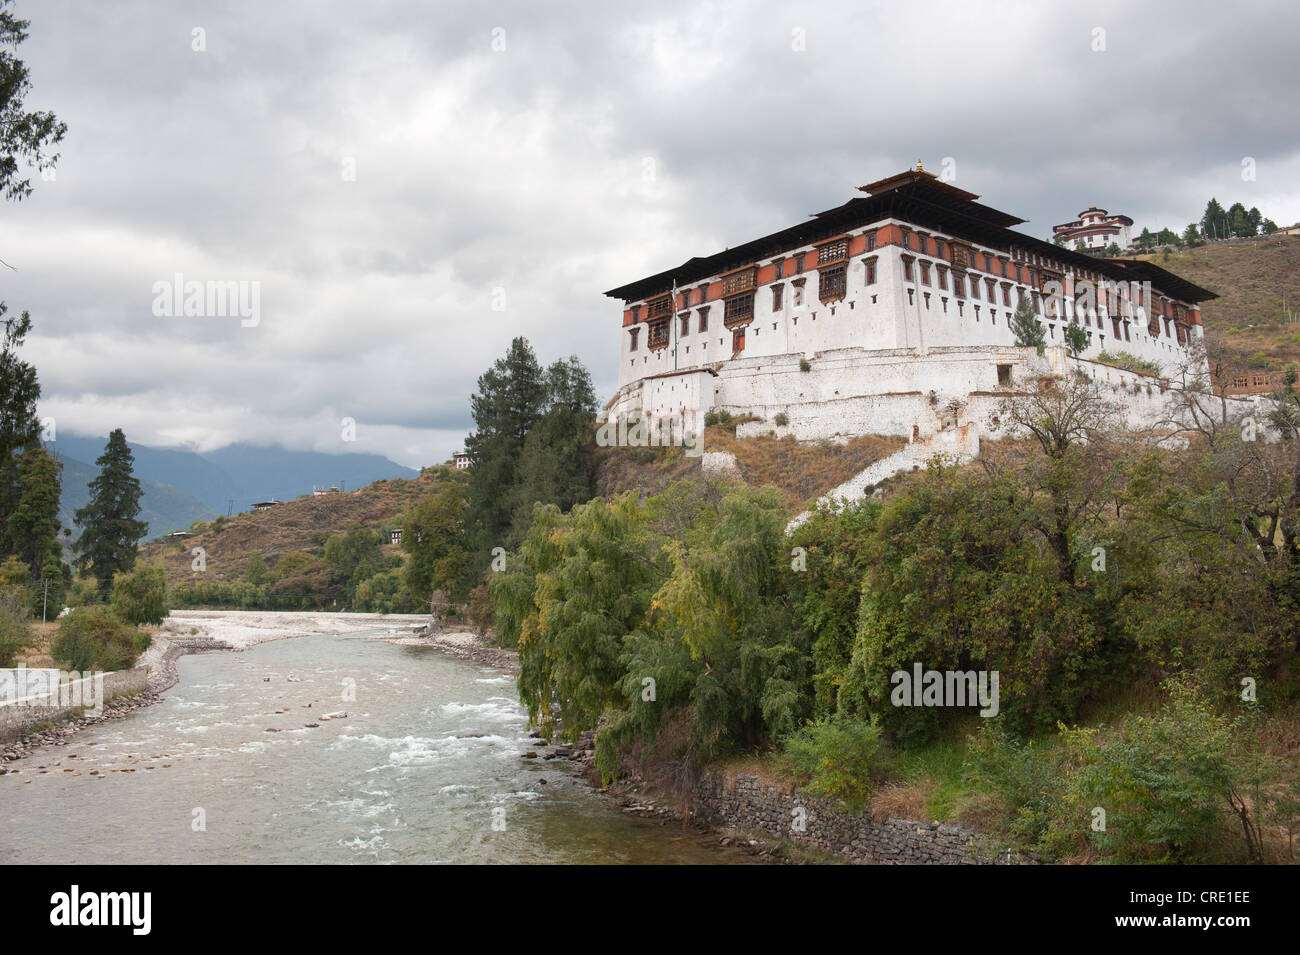 Le bouddhisme tibétain, le monastère Rinpung Dzong et forteresse au bord d'une rivière, Paro, l'Himalaya, le Bhoutan, l'Asie du Sud, Asie Banque D'Images